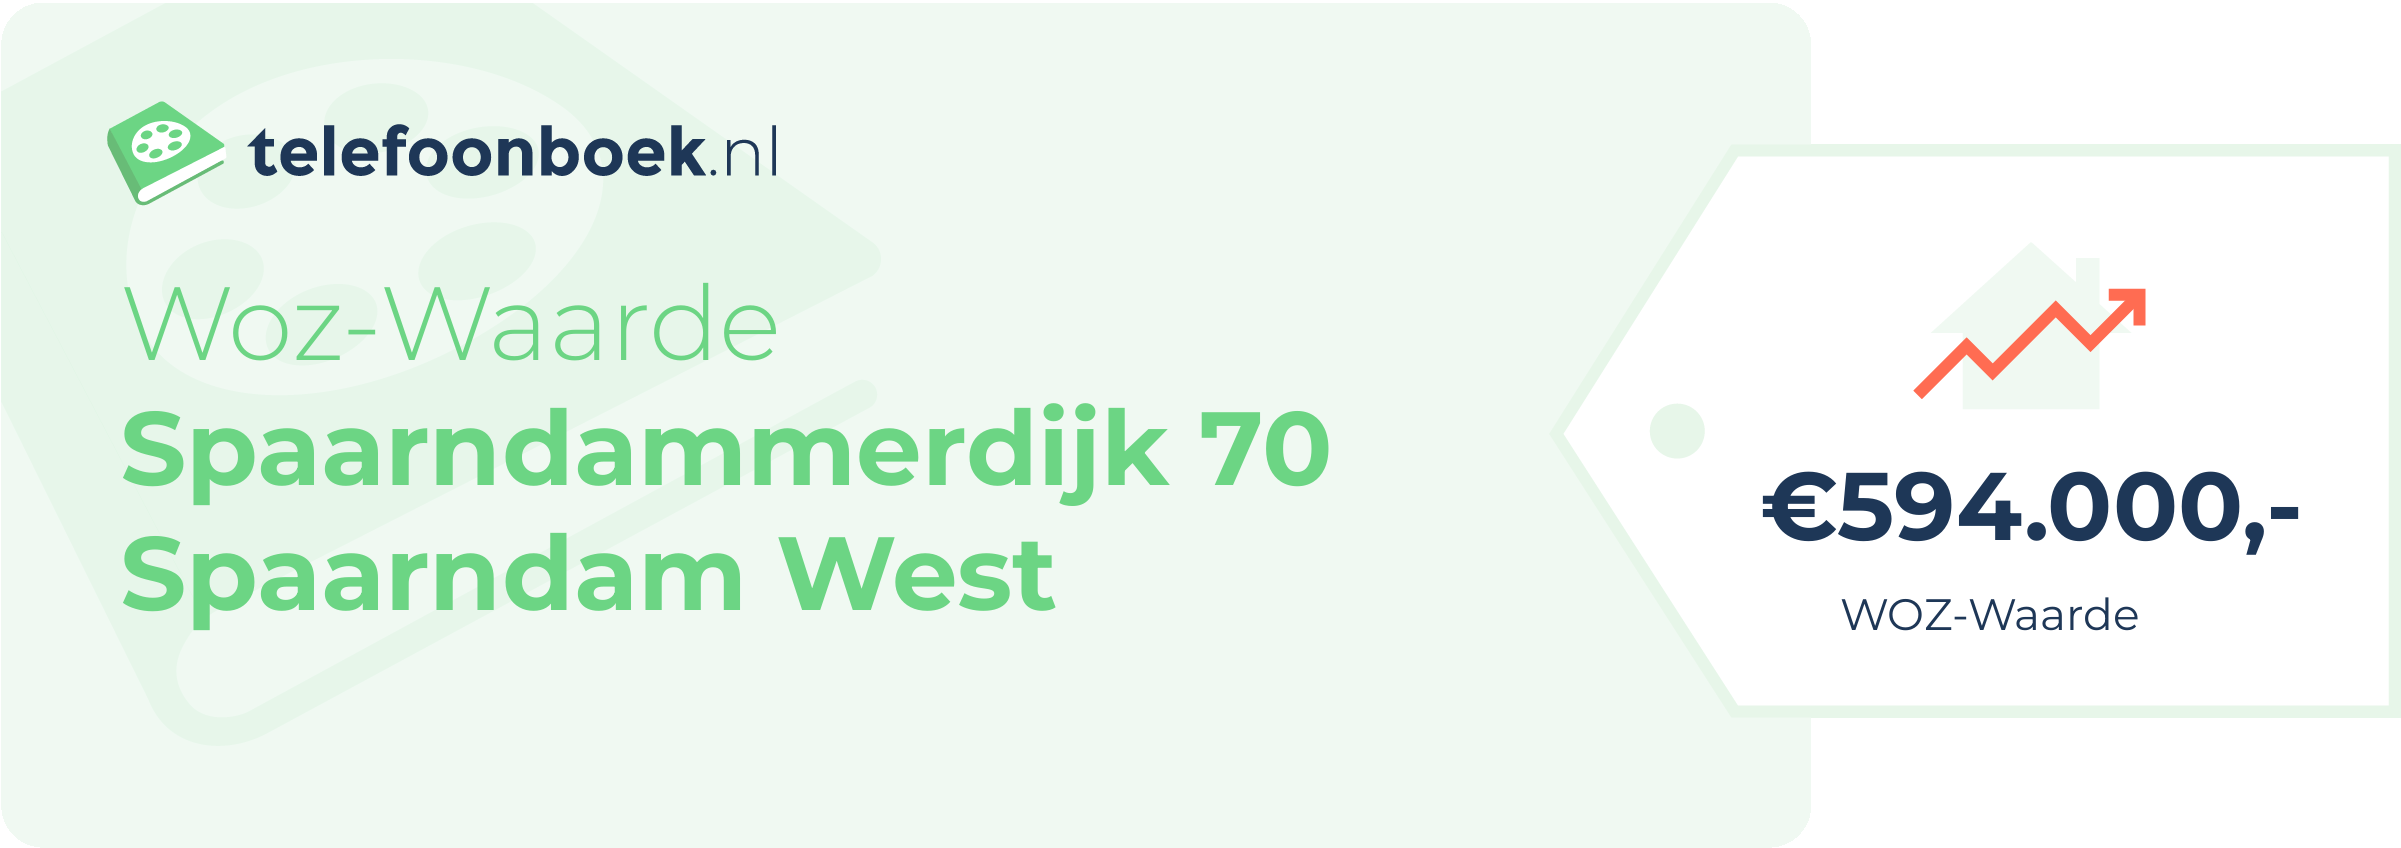 WOZ-waarde Spaarndammerdijk 70 Spaarndam West